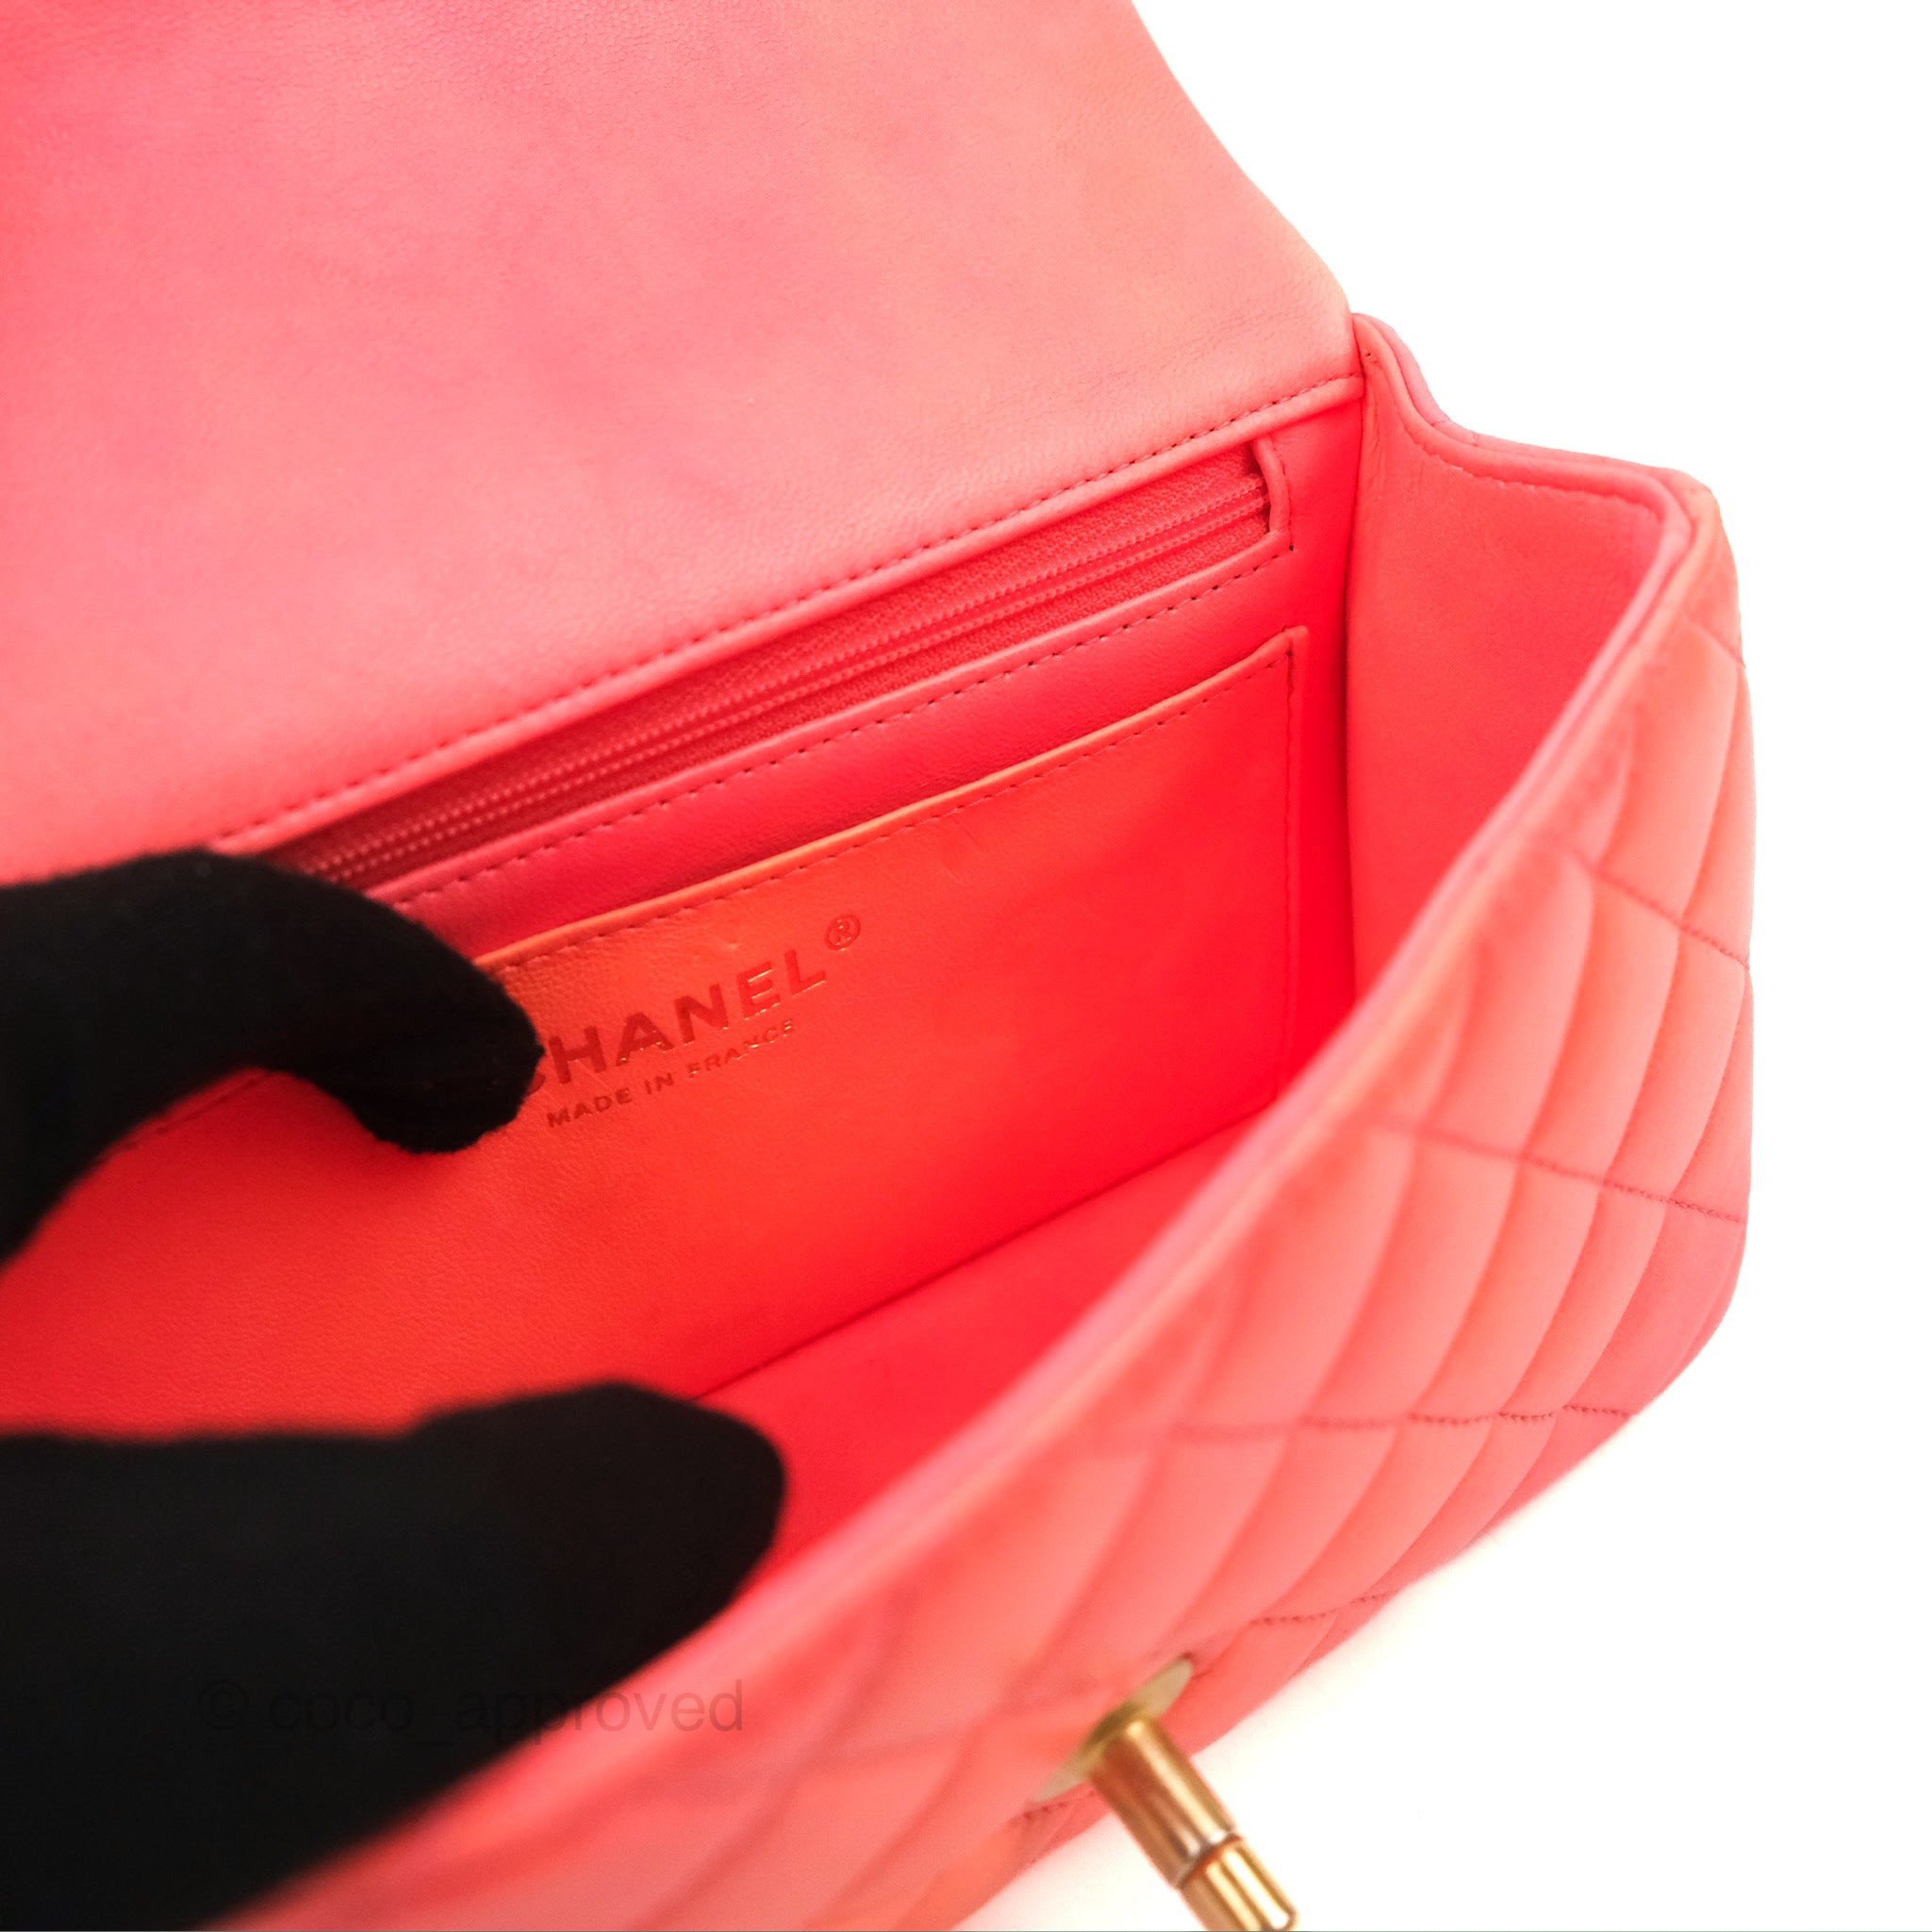 Chanel Flap Bag Orange - 32 For Sale on 1stDibs